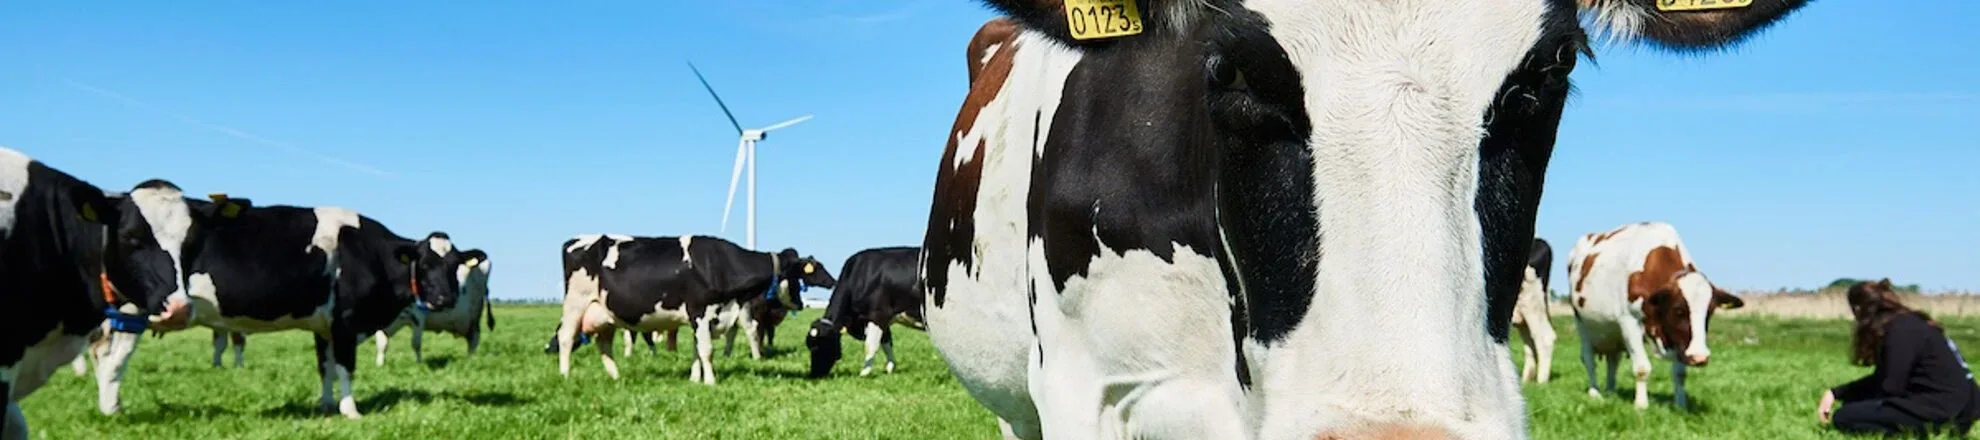 koeien in wei melkveebedrijf aeres farms aeres hogeschool dronten